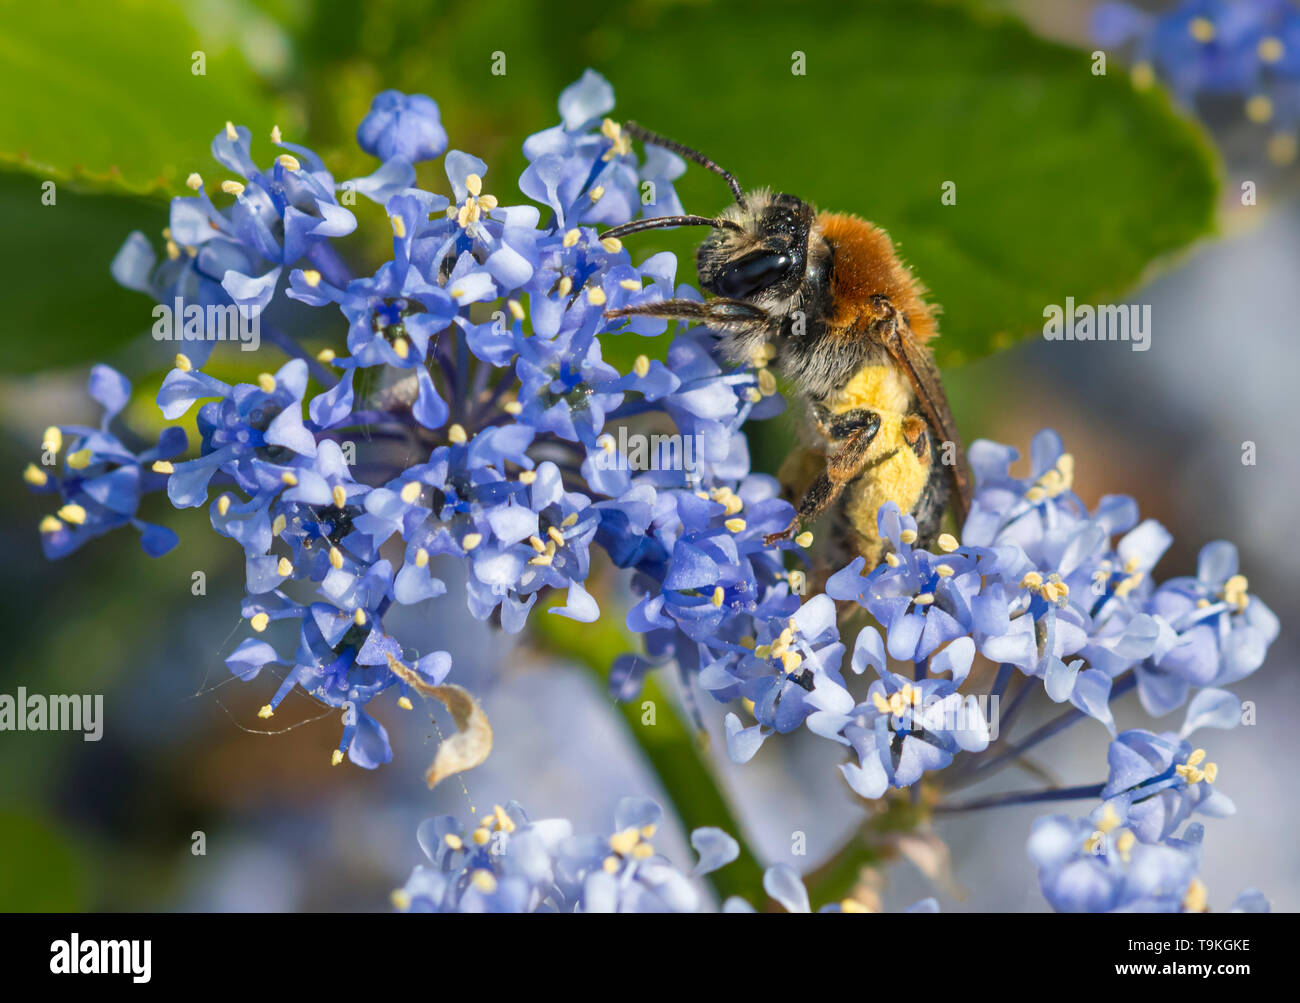 Andrena haemorrhoa (début de l'exploitation minière, de l'abeille à queue Orange mining bee) la collecte du pollen de lilas californien (Ceanothus) au printemps (mai), West Sussex, UK Banque D'Images